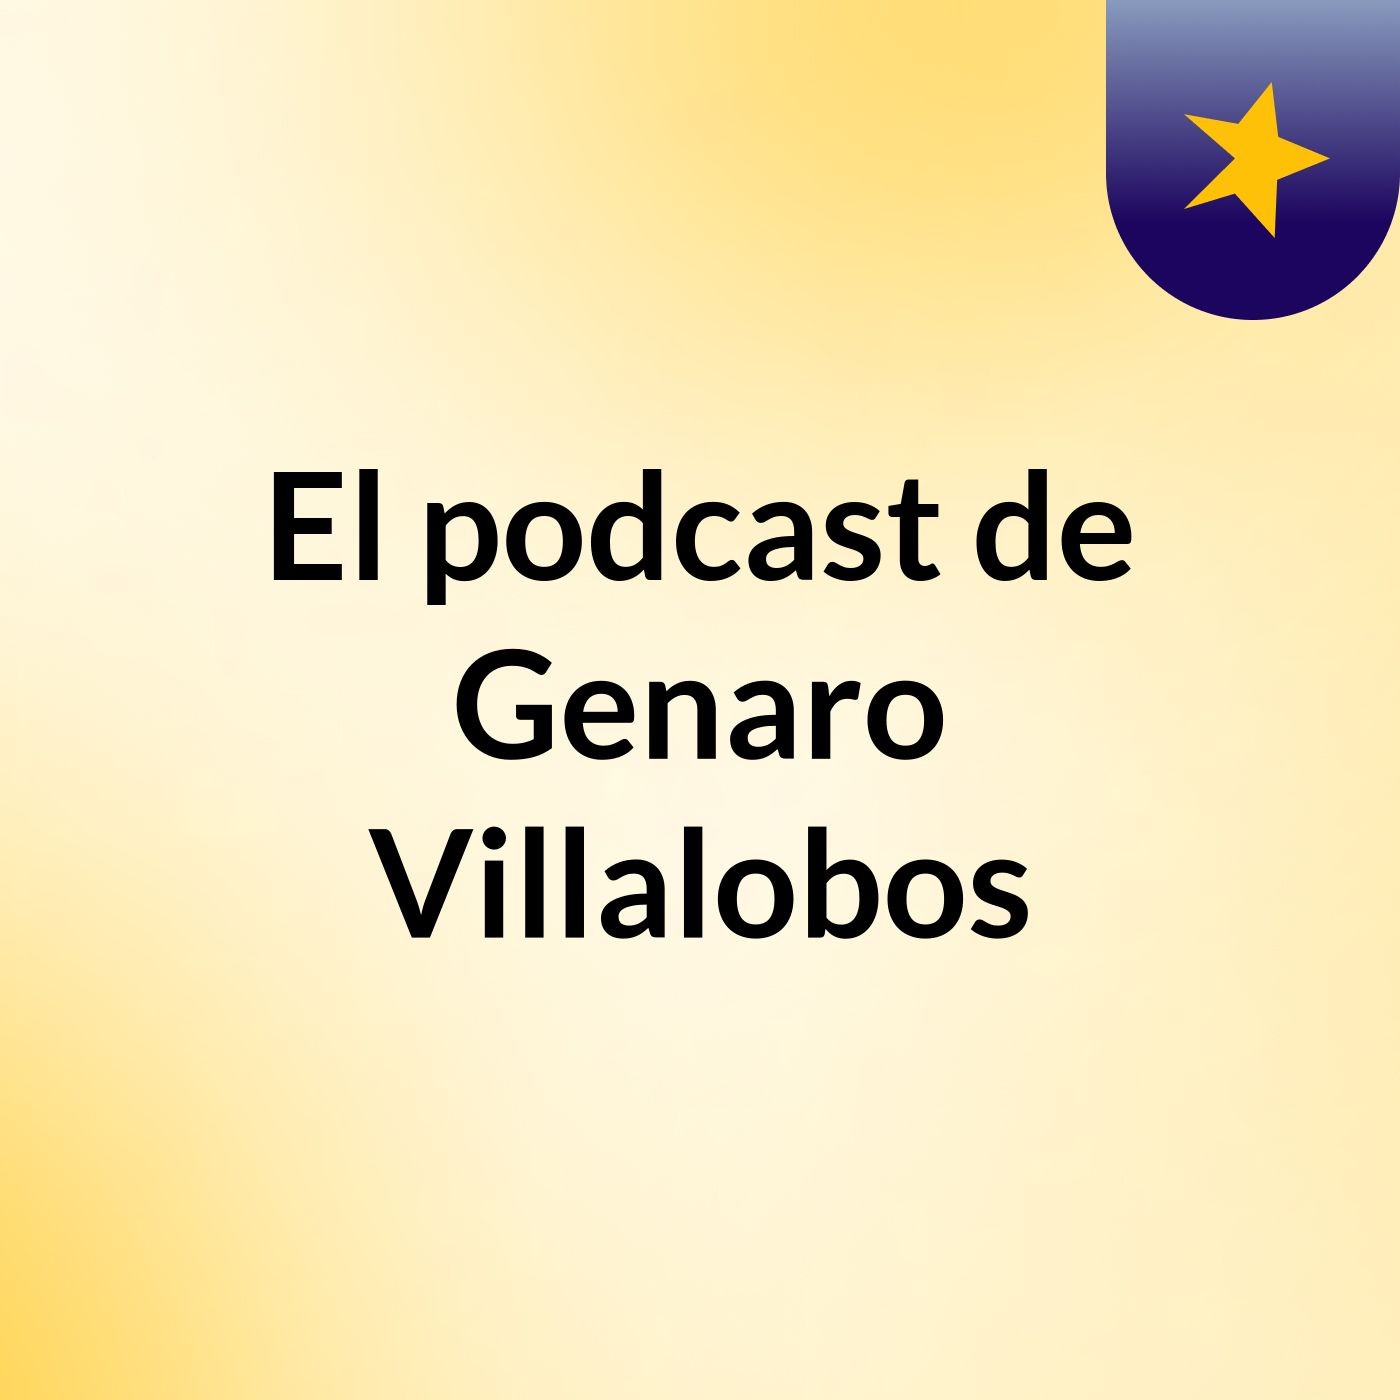 El podcast de Genaro Villalobos